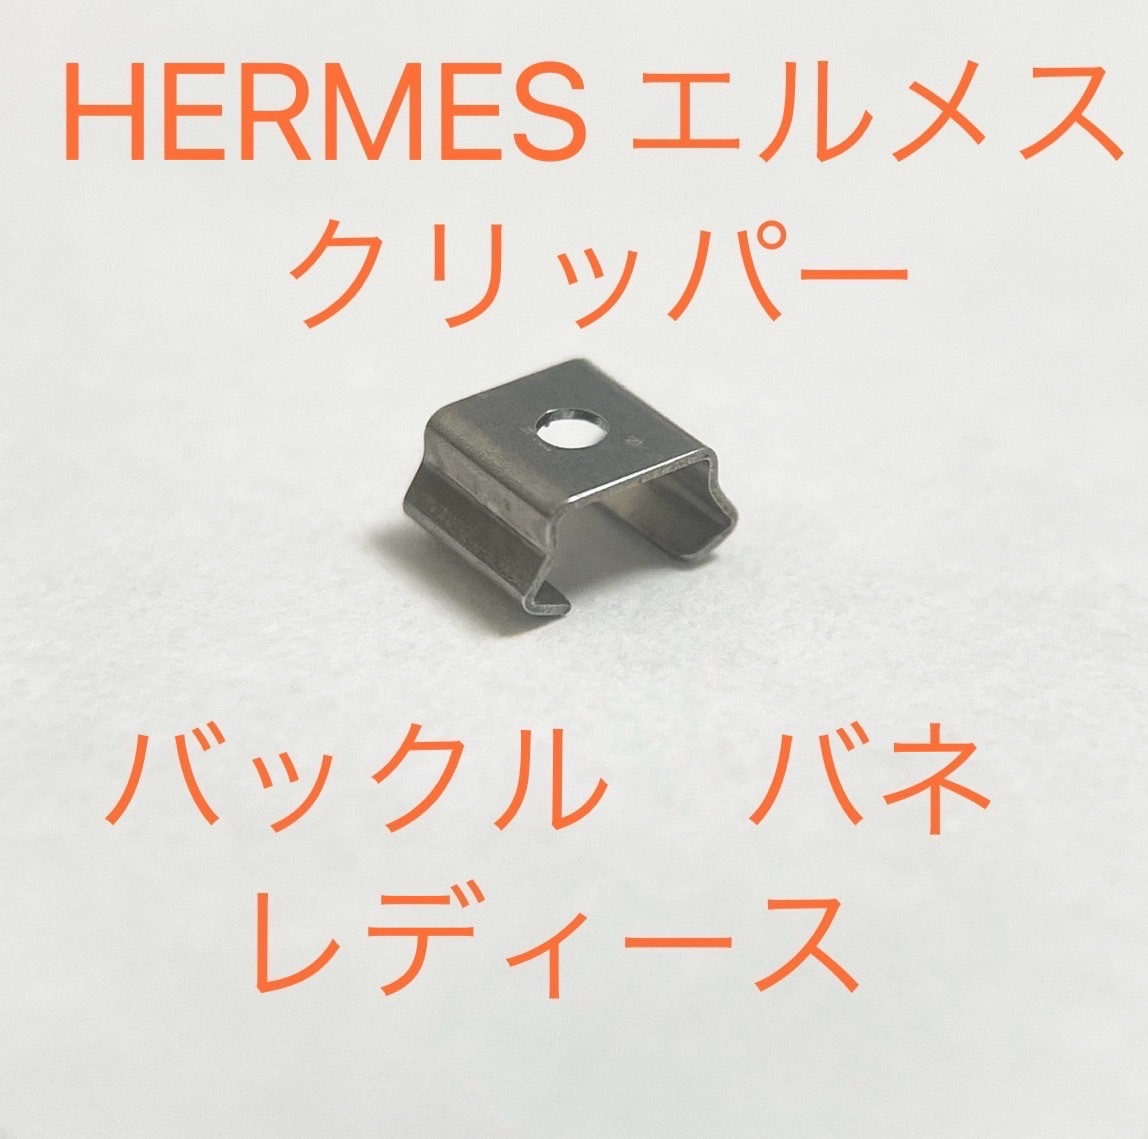 エルメス クリッパー バックルバネ レディースサイズ 修理部品 社外品 ジェネリック部品 クラスプ HERMESの画像1